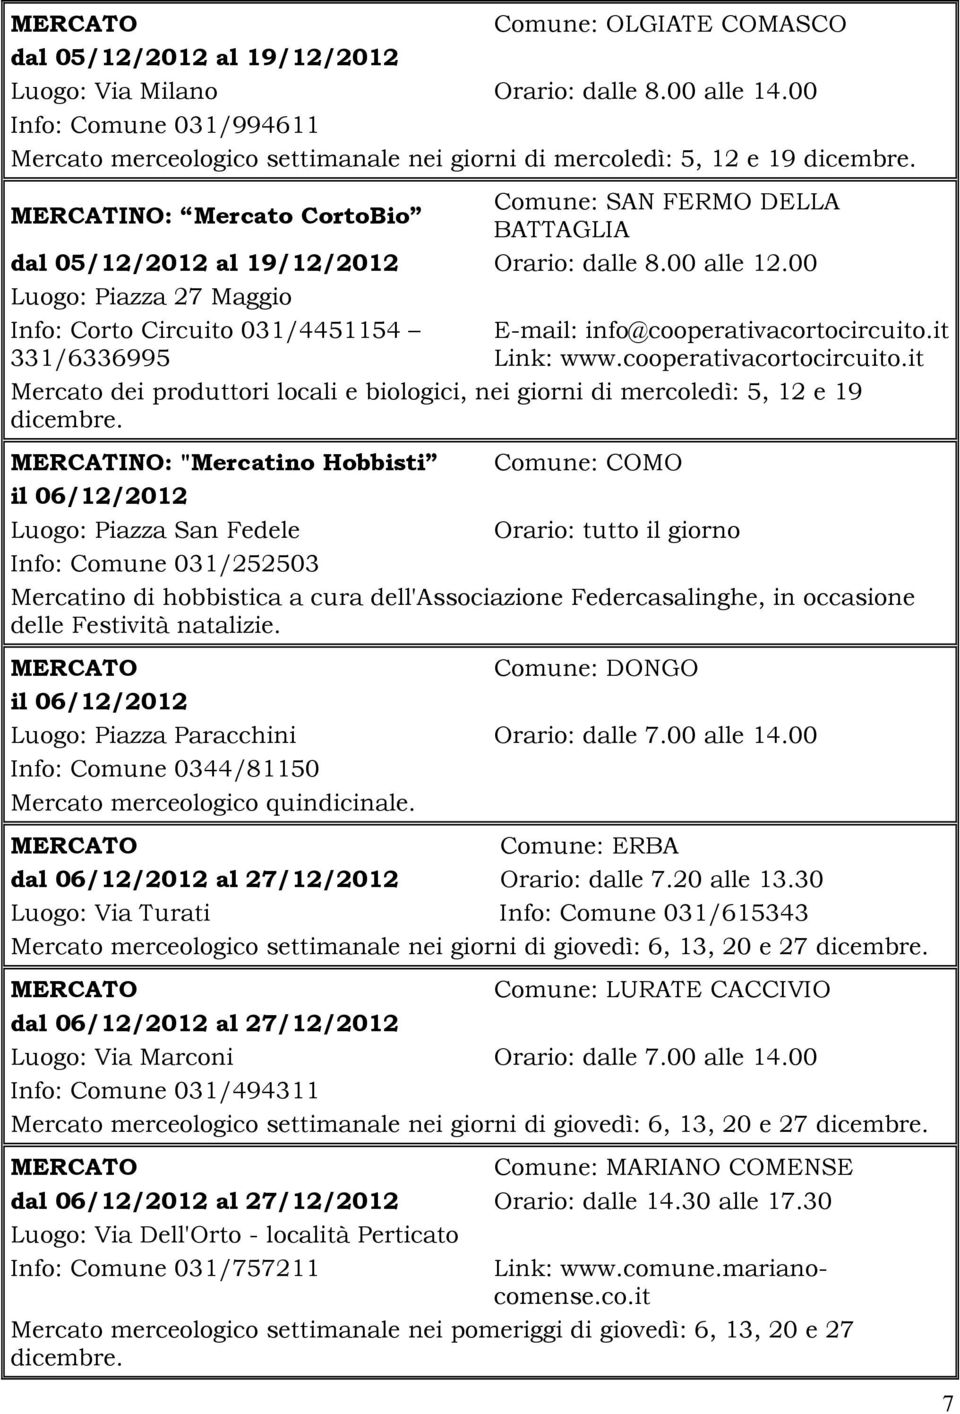 MERCATINO: Mercato CortoBio Comune: SAN FERMO DELLA BATTAGLIA dal 05/12/2012 al 19/12/2012 Orario: dalle 8.00 alle 12.